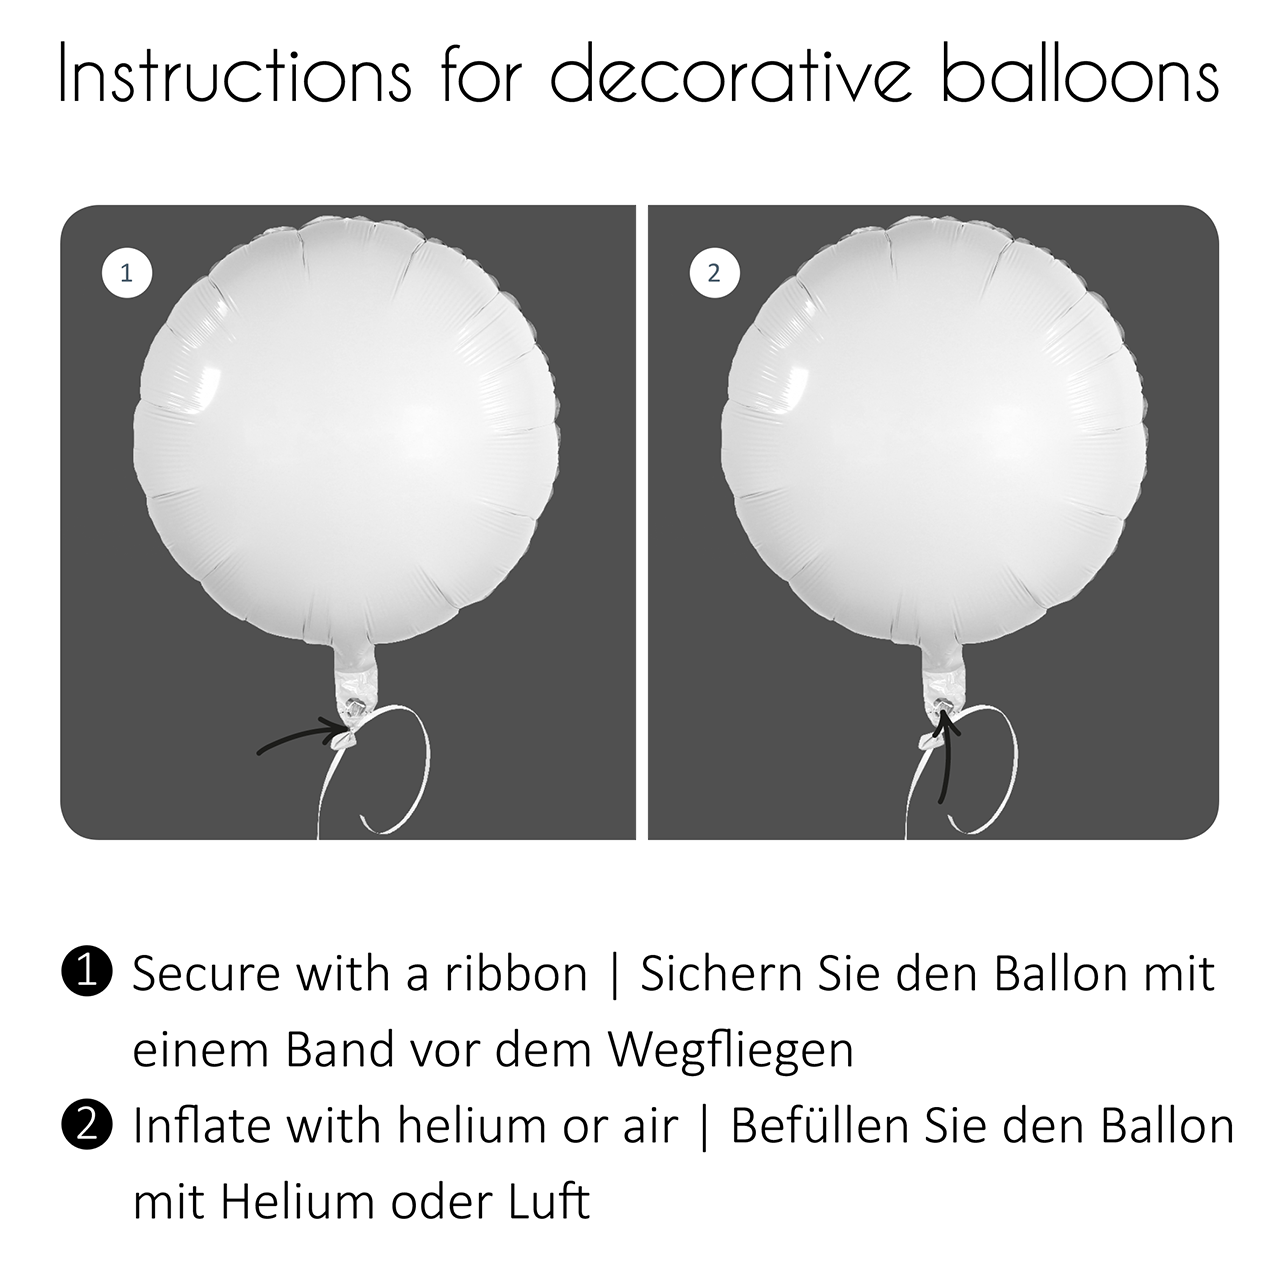 Folienballon rund - Bär Endlich Schulkind - 43 cm